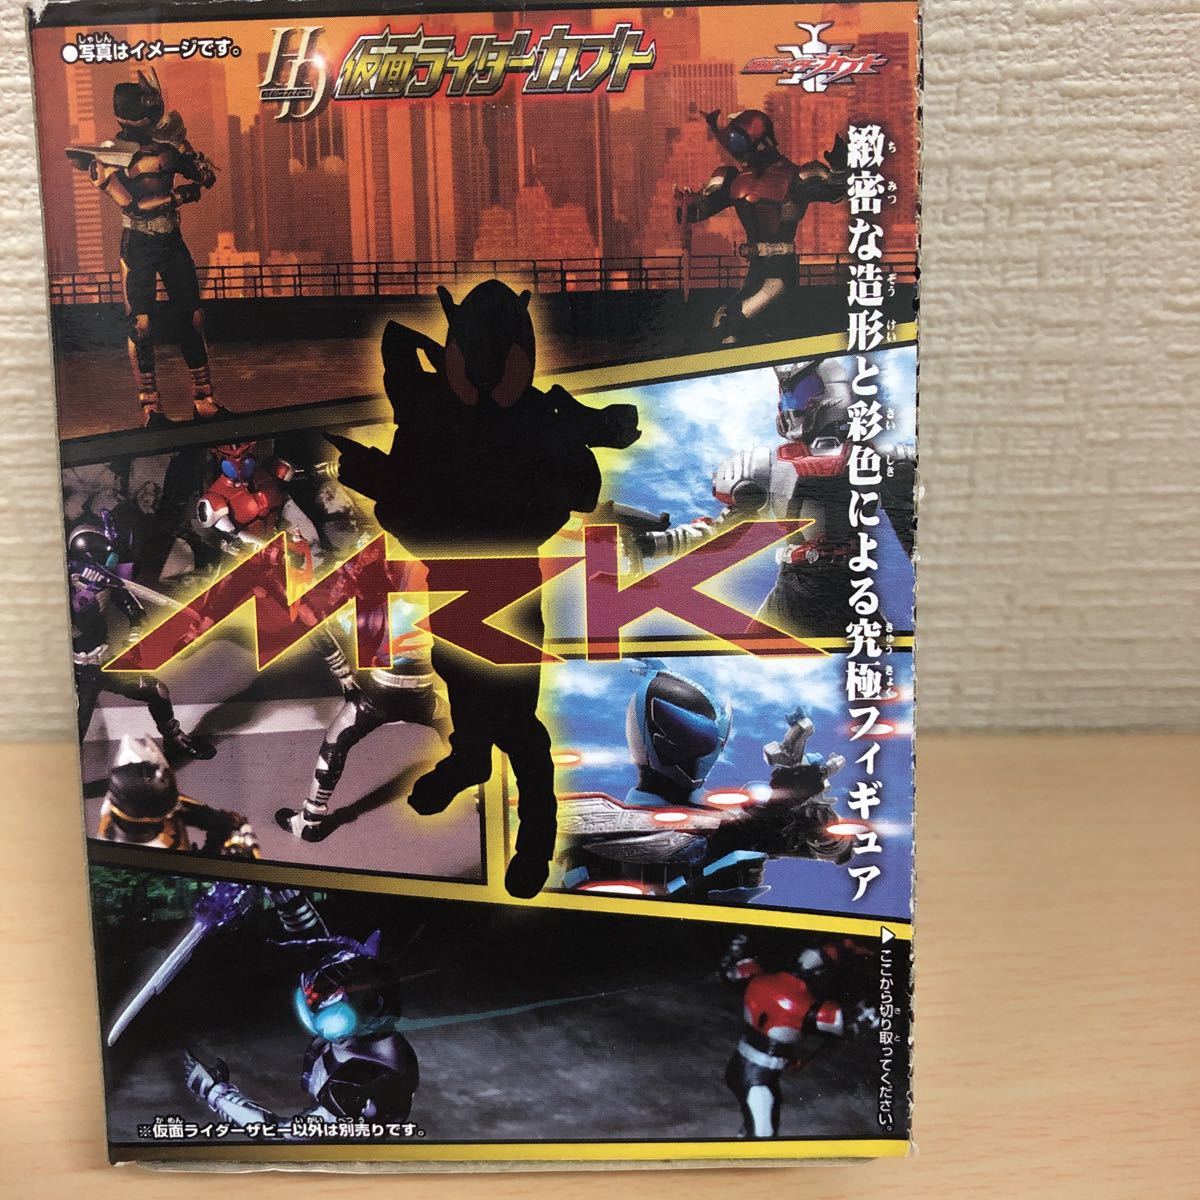  редкий Bandai HD Kamen Rider Kabuto [ Kamen Rider The Be ] коробка вскрыть завершено содержание не использовался товар 